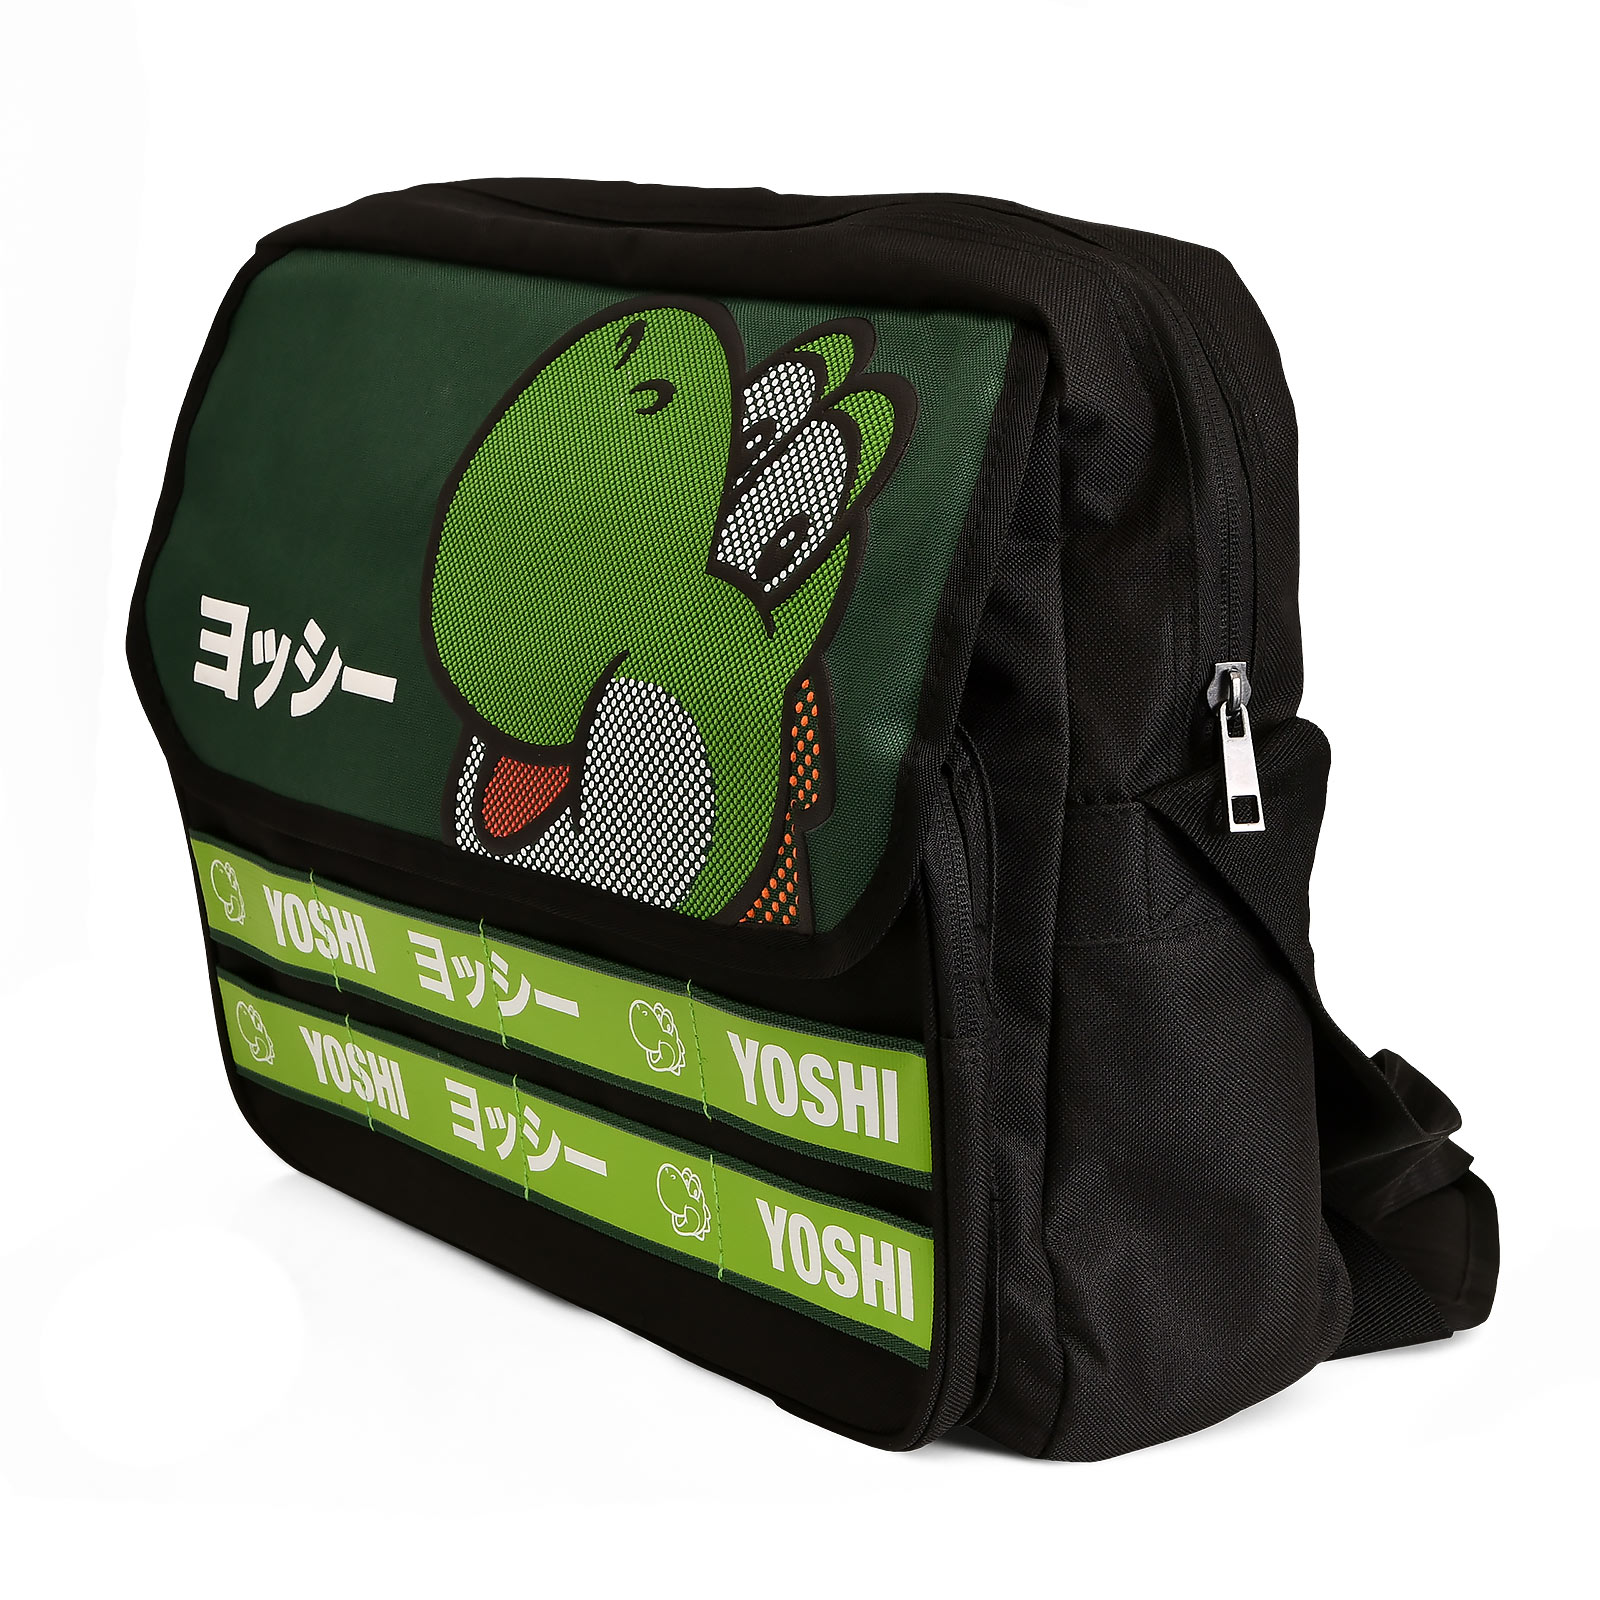 Super Mario - Yoshi Bag